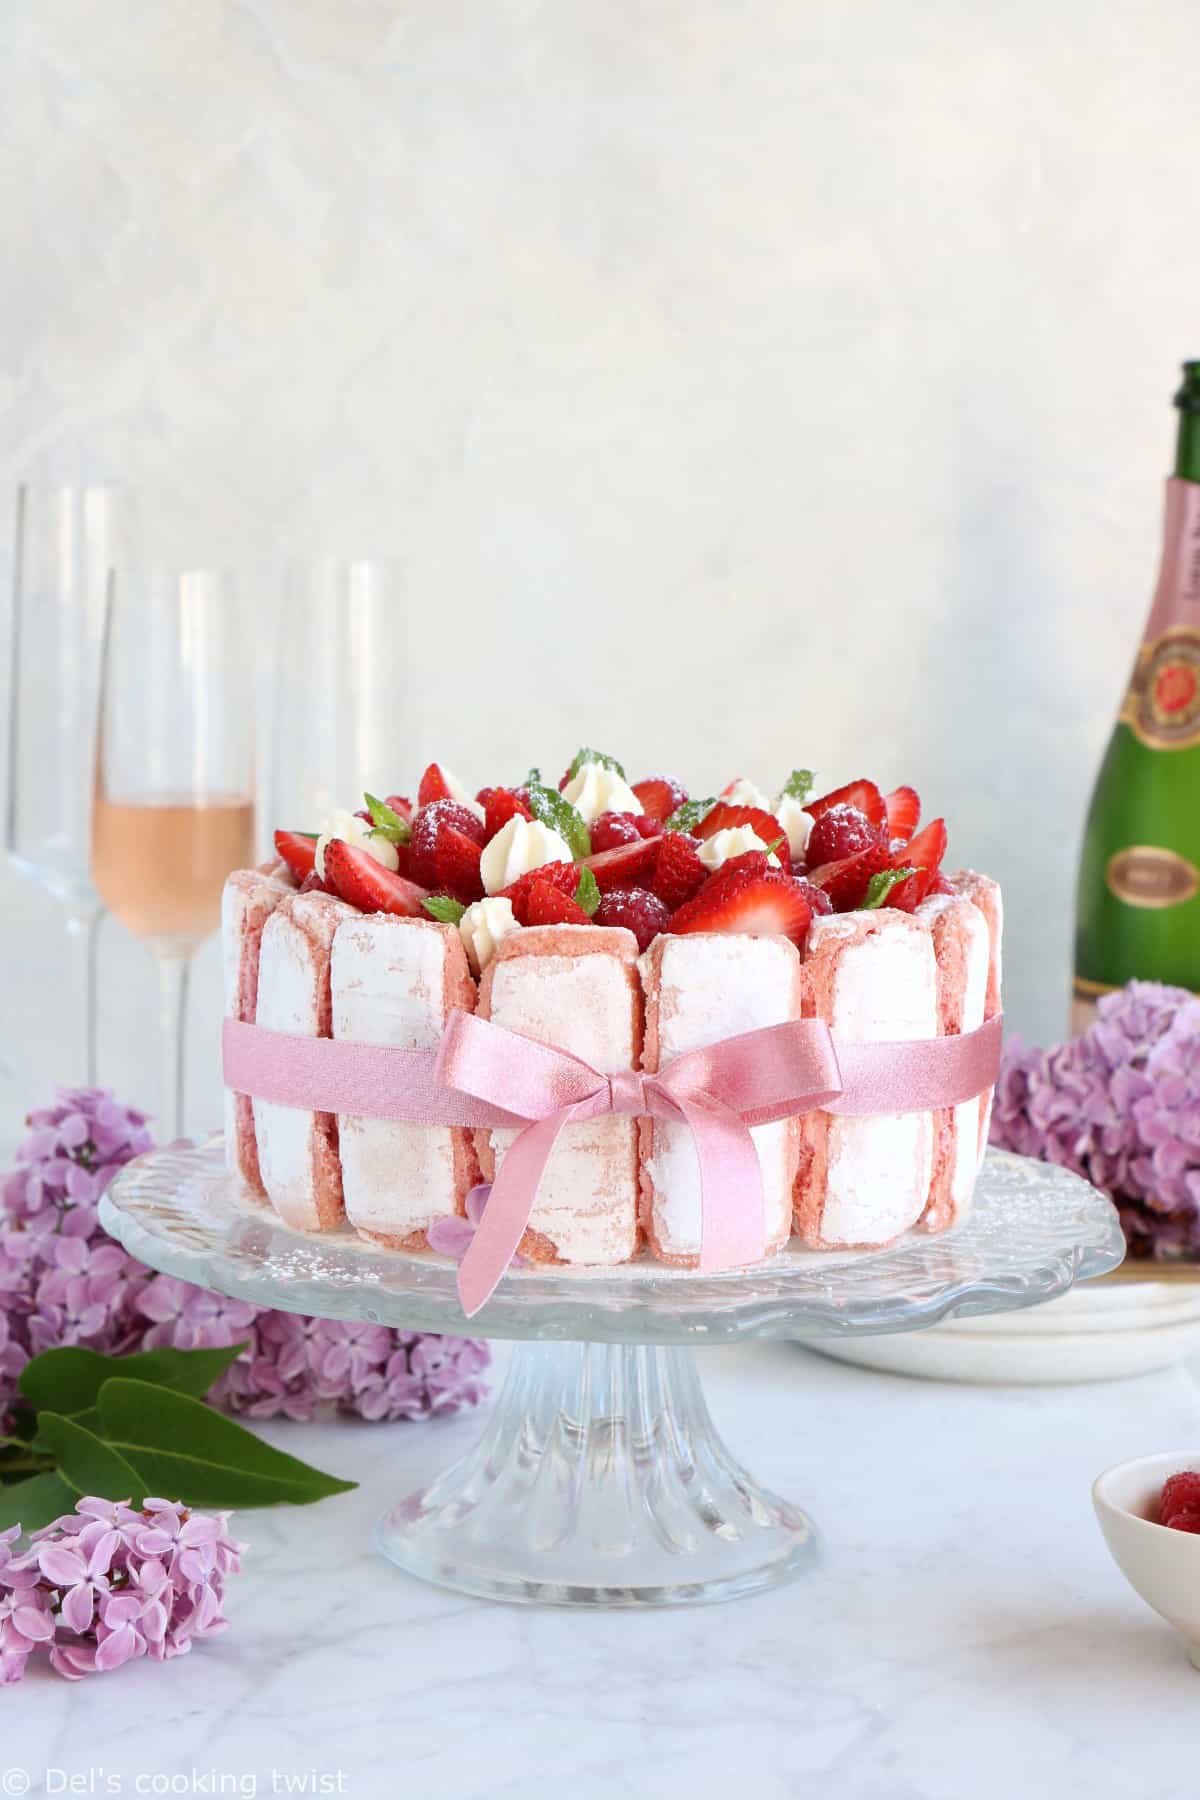 Charlotte aux fraises aux biscuits roses de Reims et mousse au chocolat blanc